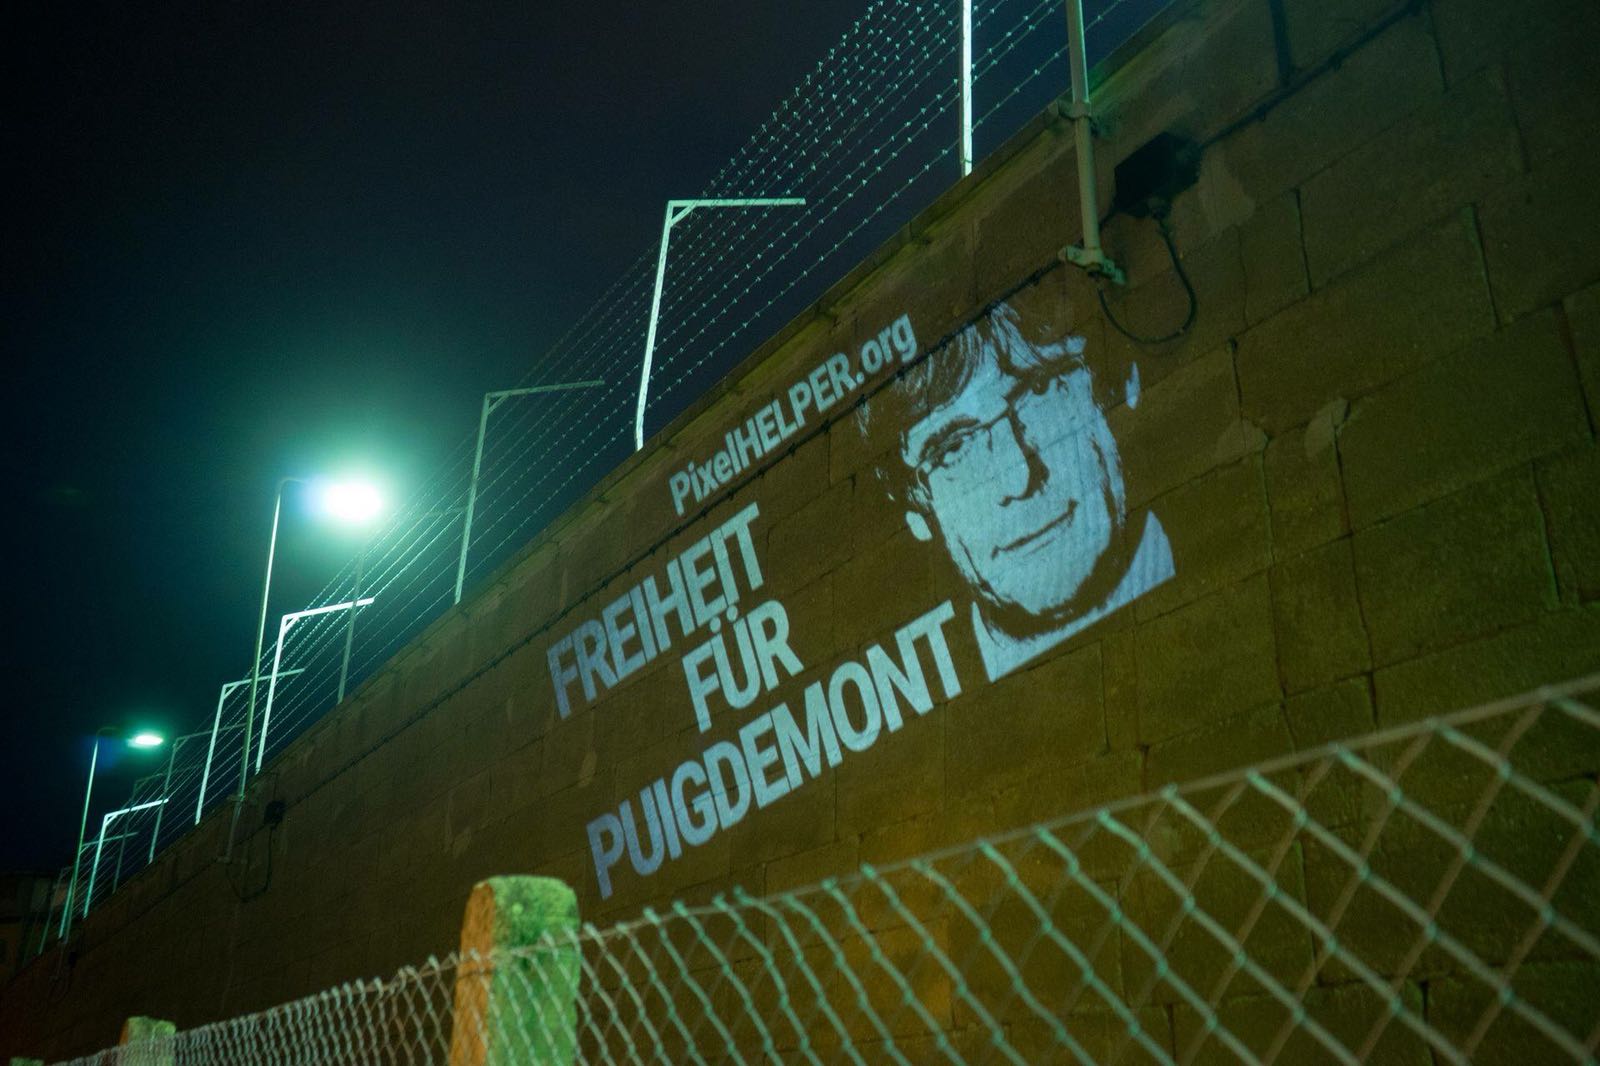 Projecten una imatge que reclama l'alliberament de Puigdemont a una presó alemanya